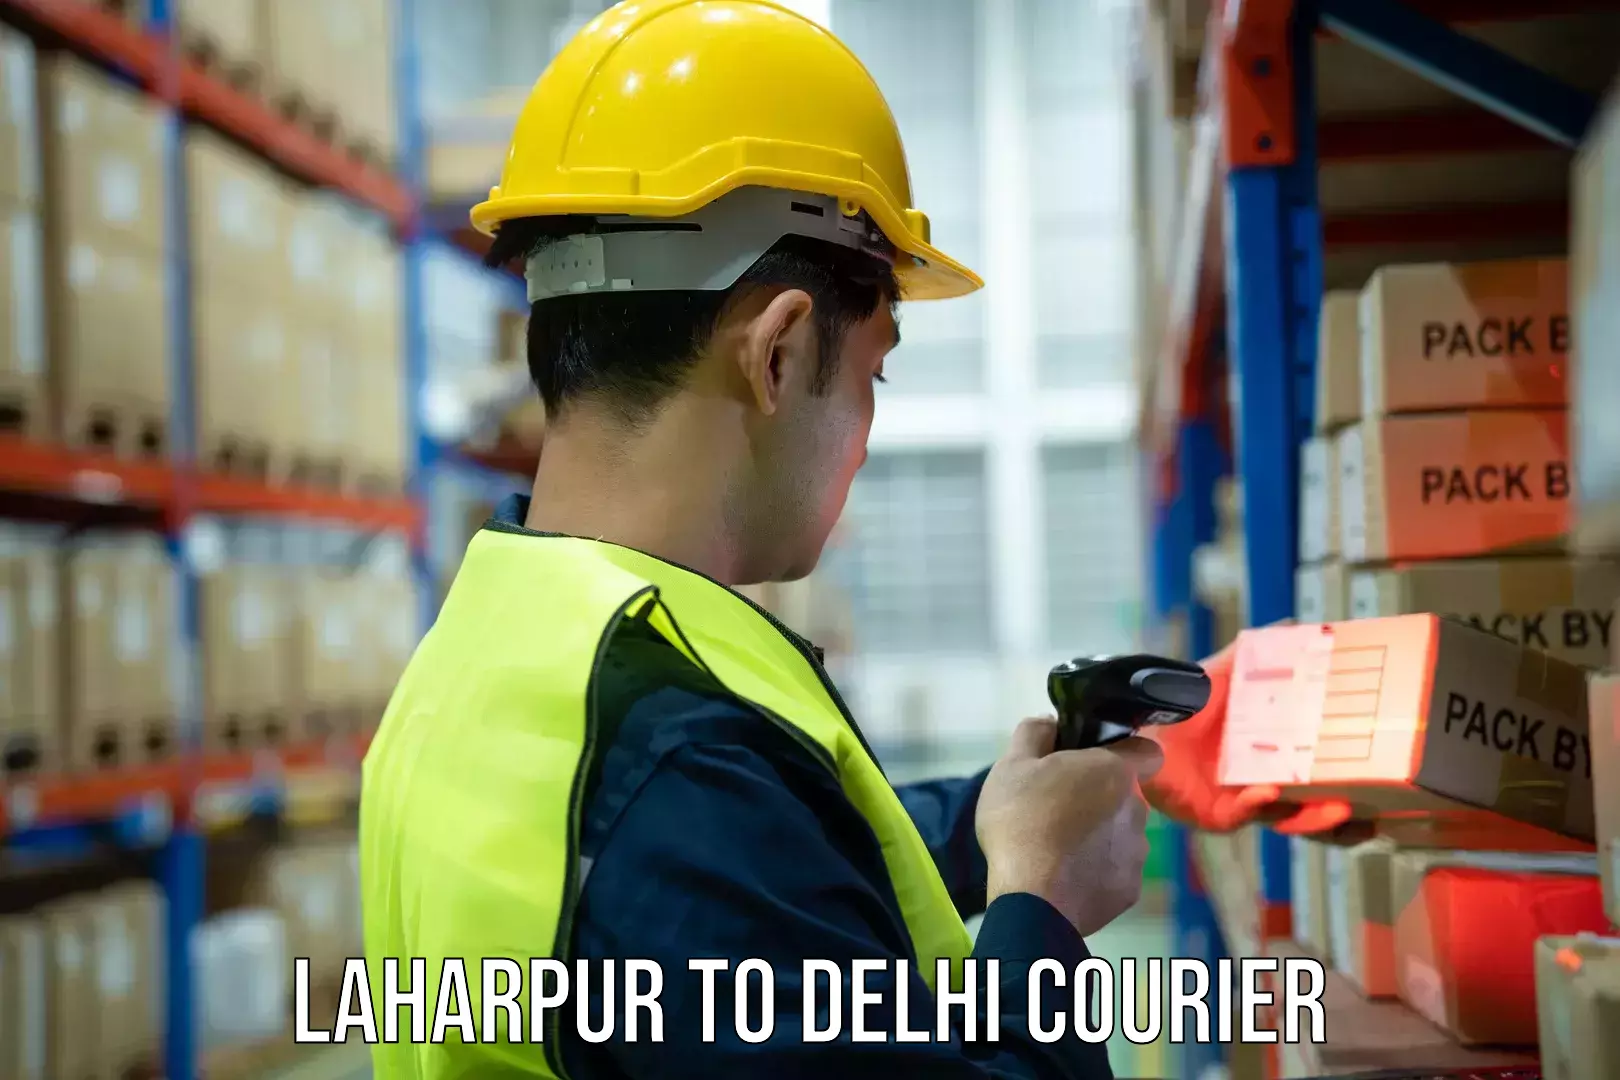 Bulk shipment Laharpur to NCR